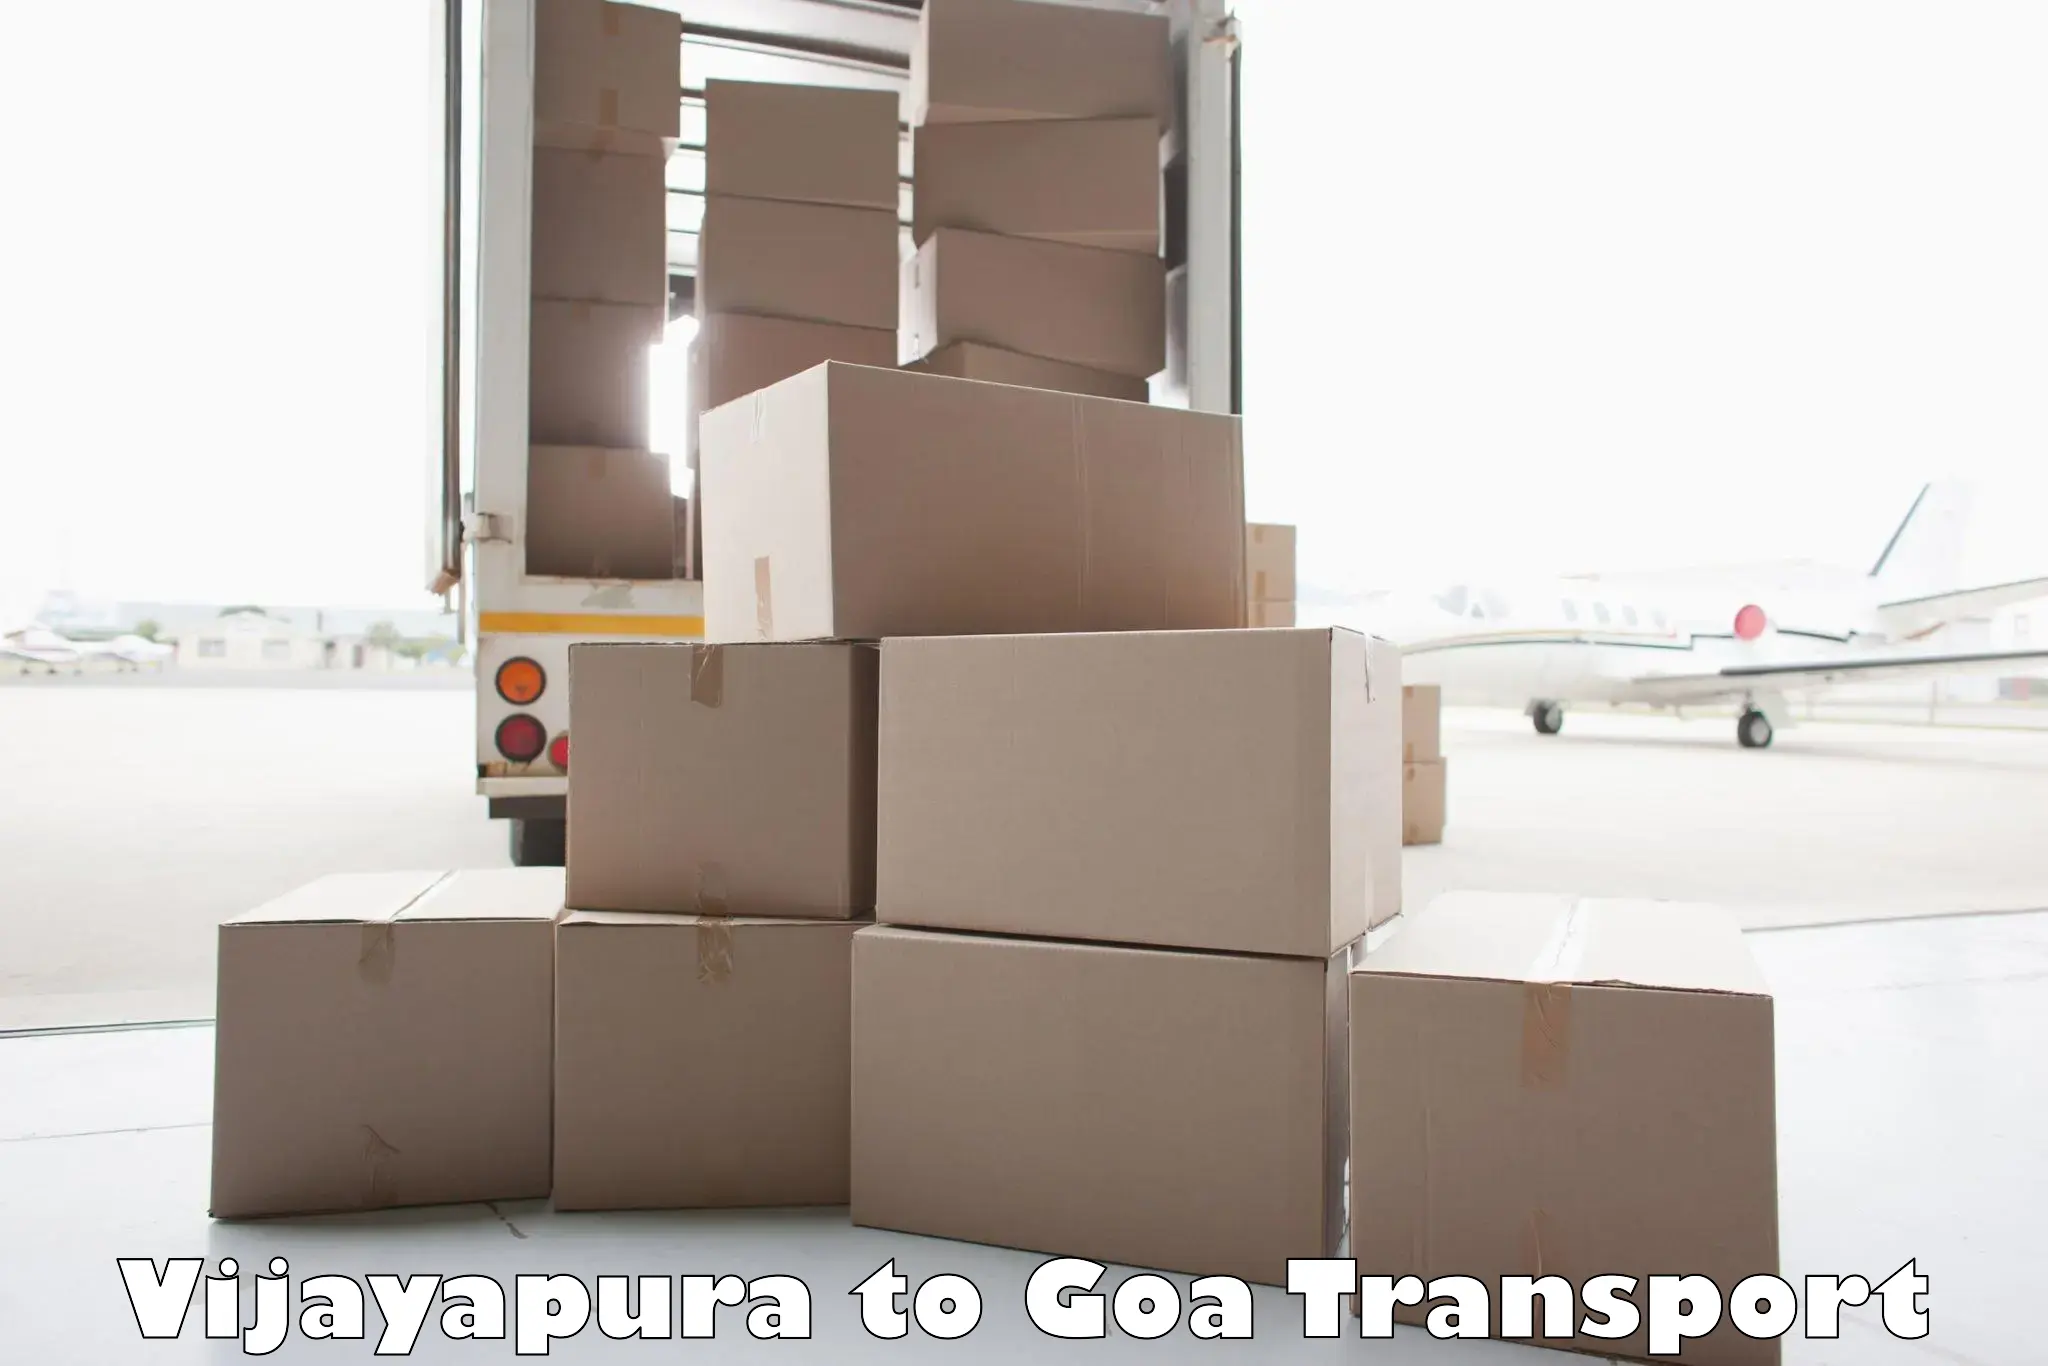 Land transport services Vijayapura to IIT Goa